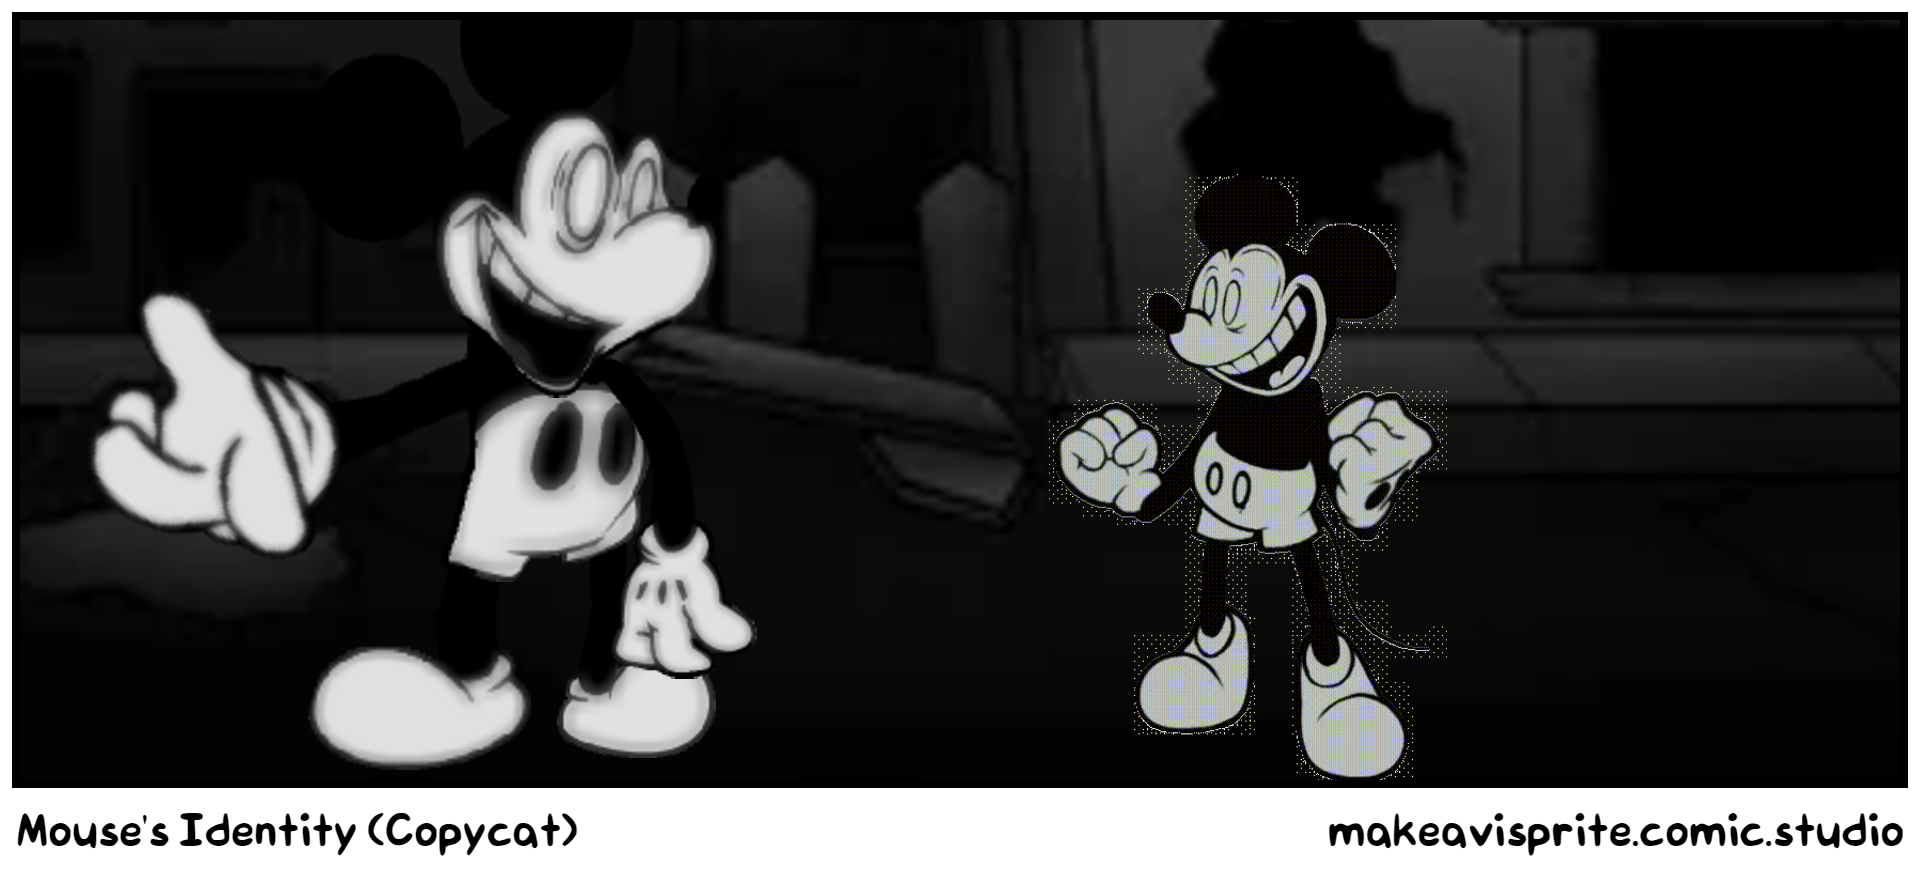 Mouse's Identity (Copycat)